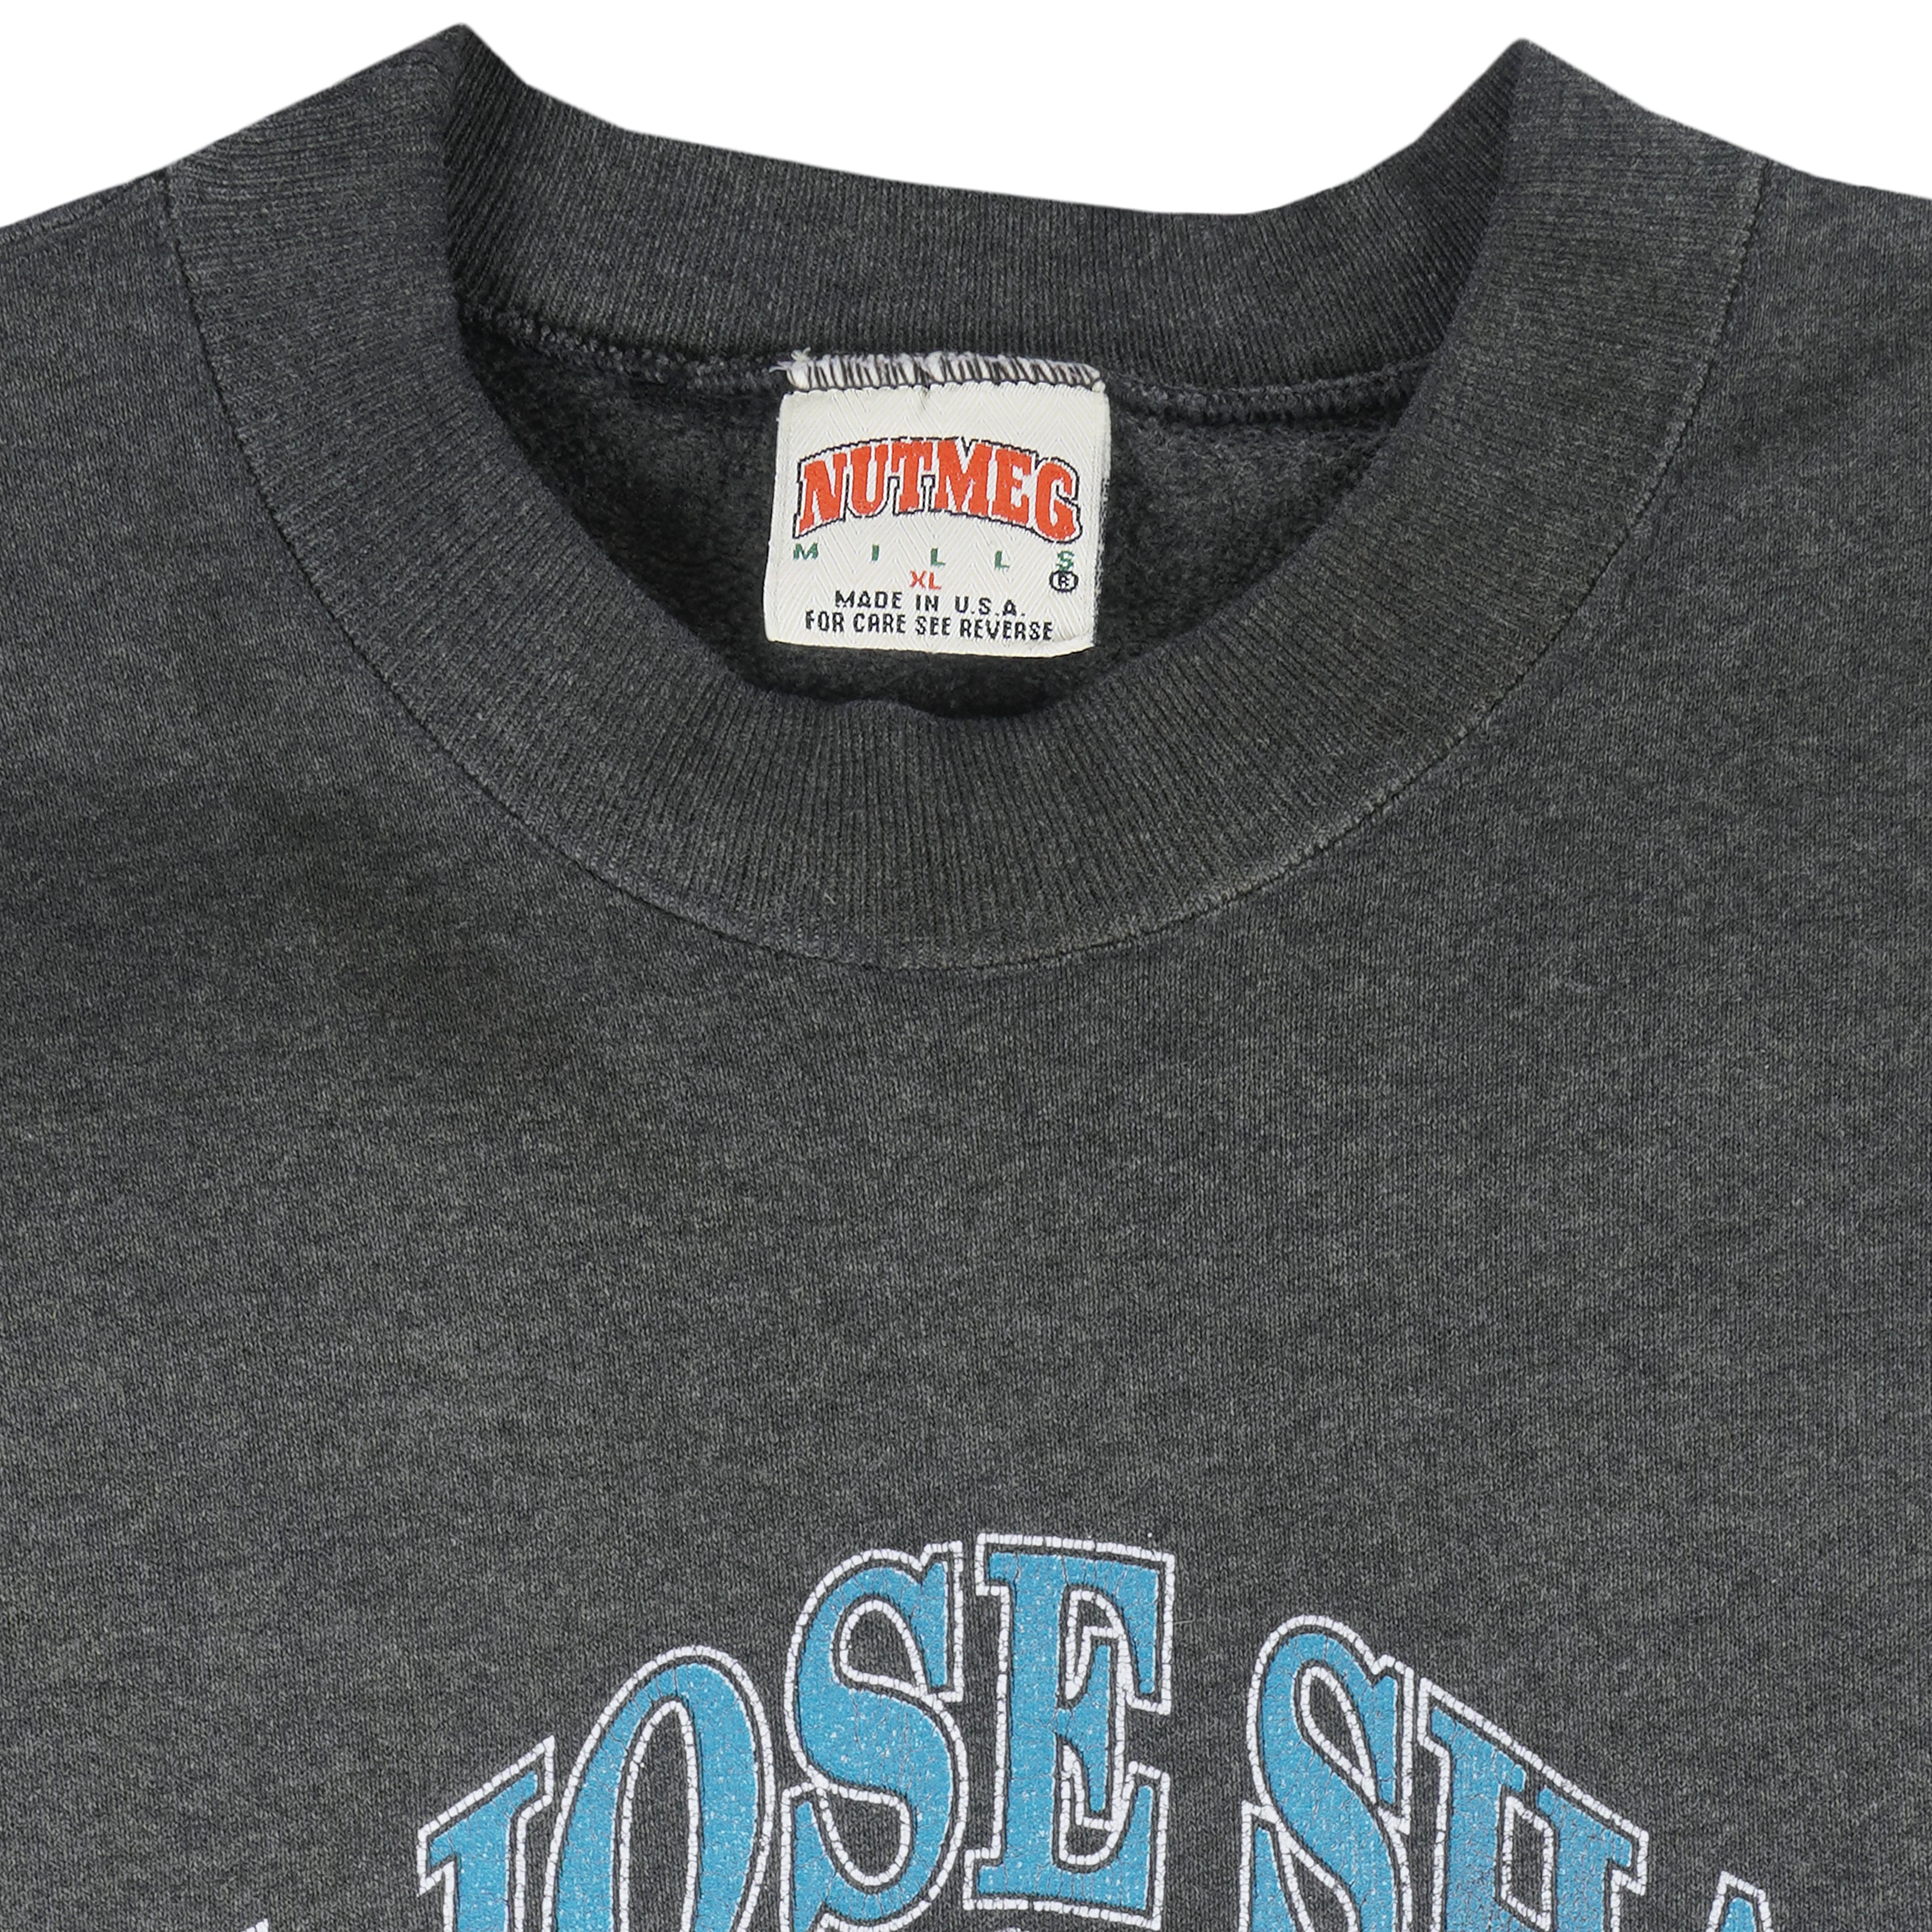 Vintage 90s Saint Louis Blues Sweatshirt Nutmeg Mills Size Medium M NHL  Hockey